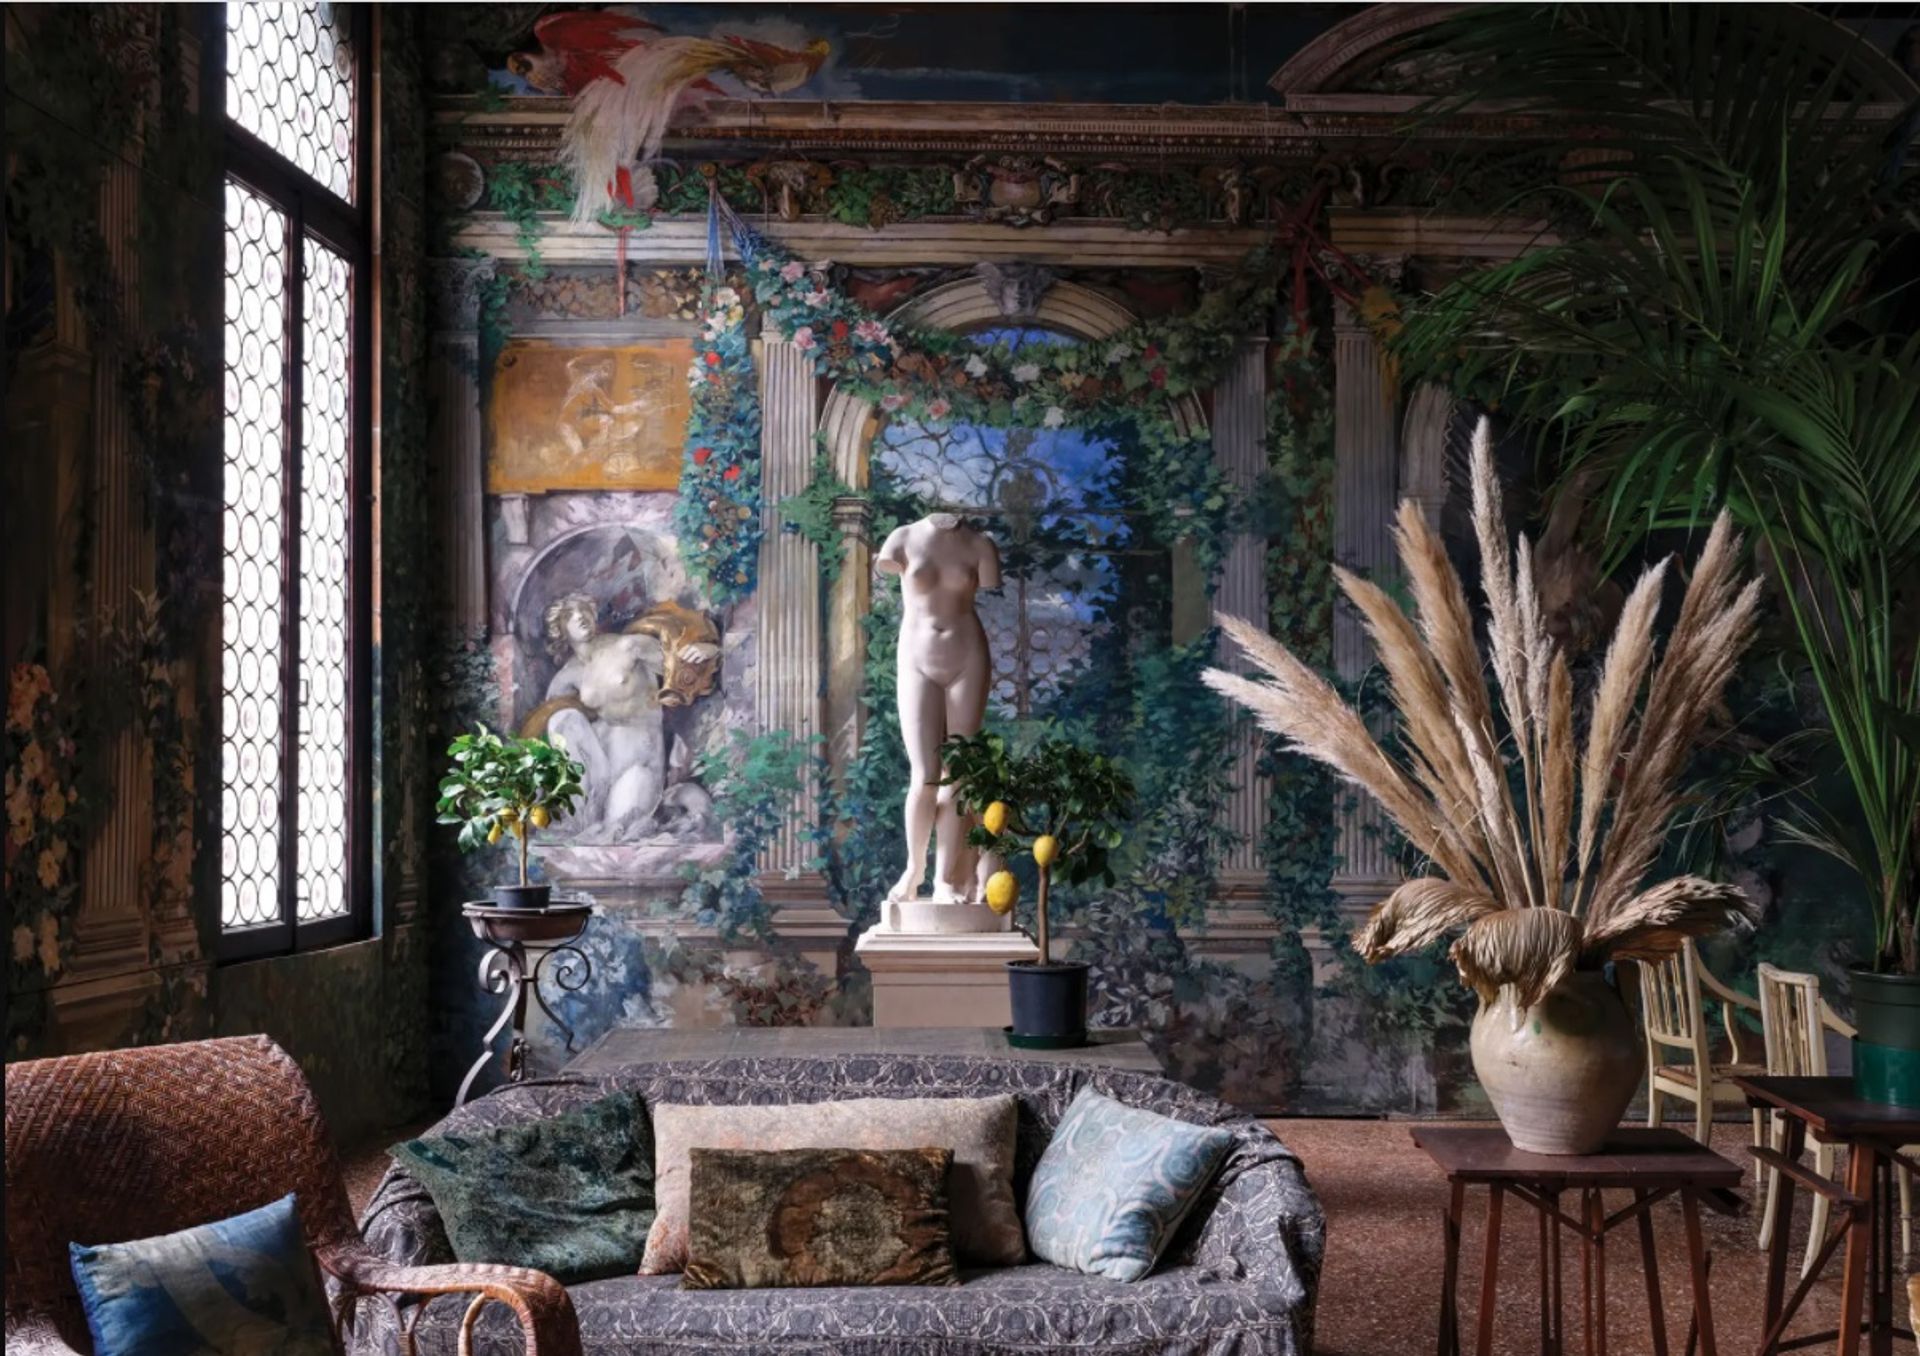 ציור הקיר The Winter Garden (1915-40s) שהיה מוסתר על ידי רהיטים במשך שנים, נחשף כעת בצורה מפוארת במוזיאון פורטוני, מוזיאון הבית הוונציאני המוקדש לאמן והמעצב הספרדי מריאנו פורטוני אי מדרזו

צילום: מאסימו ליסטרי